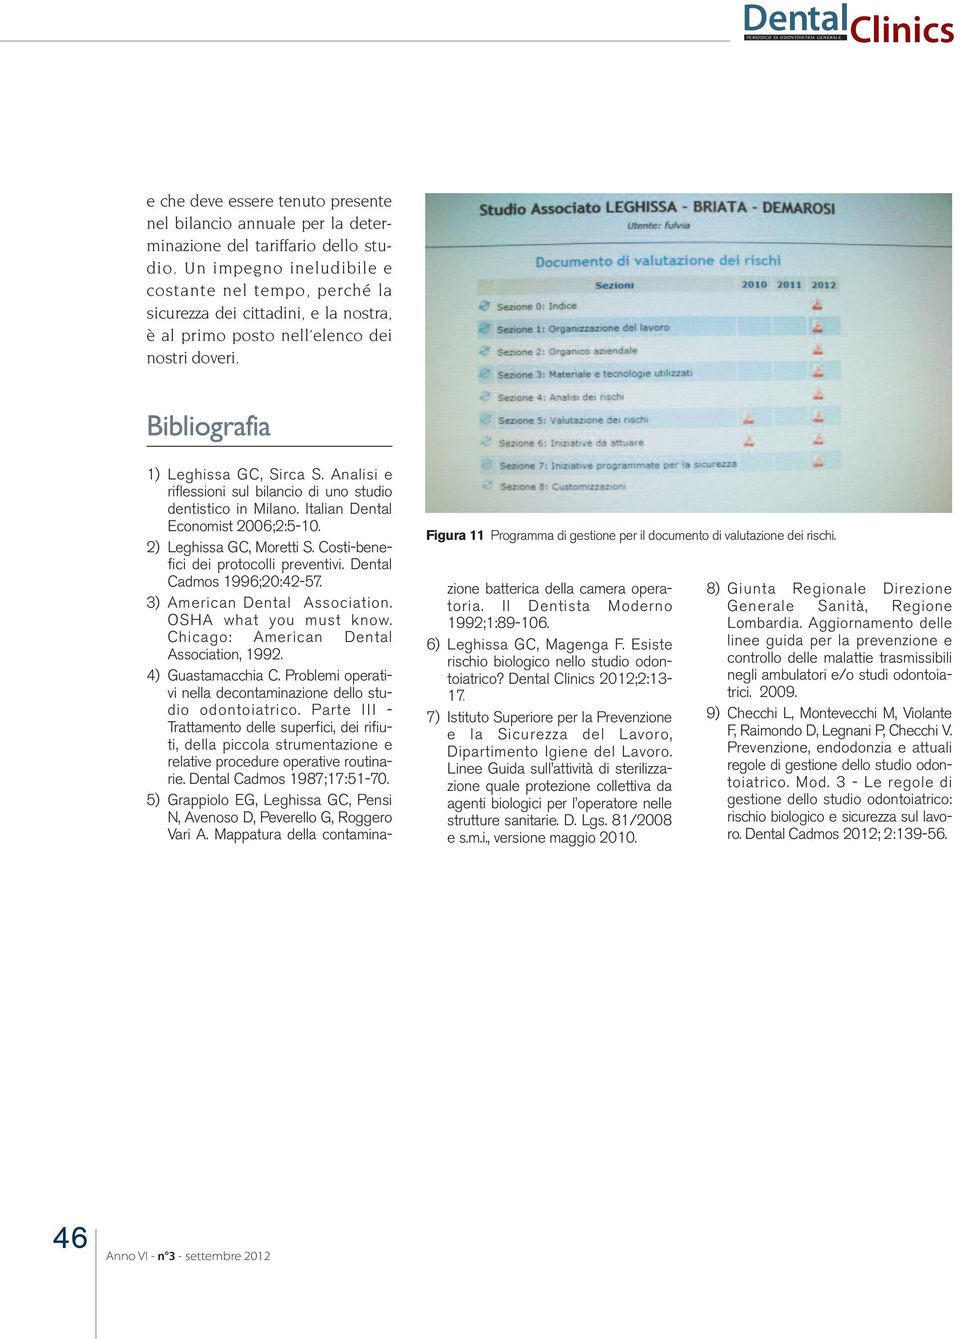 Figura 11 Programma di gestione per il documento di valutazione dei rischi. 1) Leghissa GC, Sirca S. Analisi e riflessioni sul bilancio di uno studio dentistico in Milano.